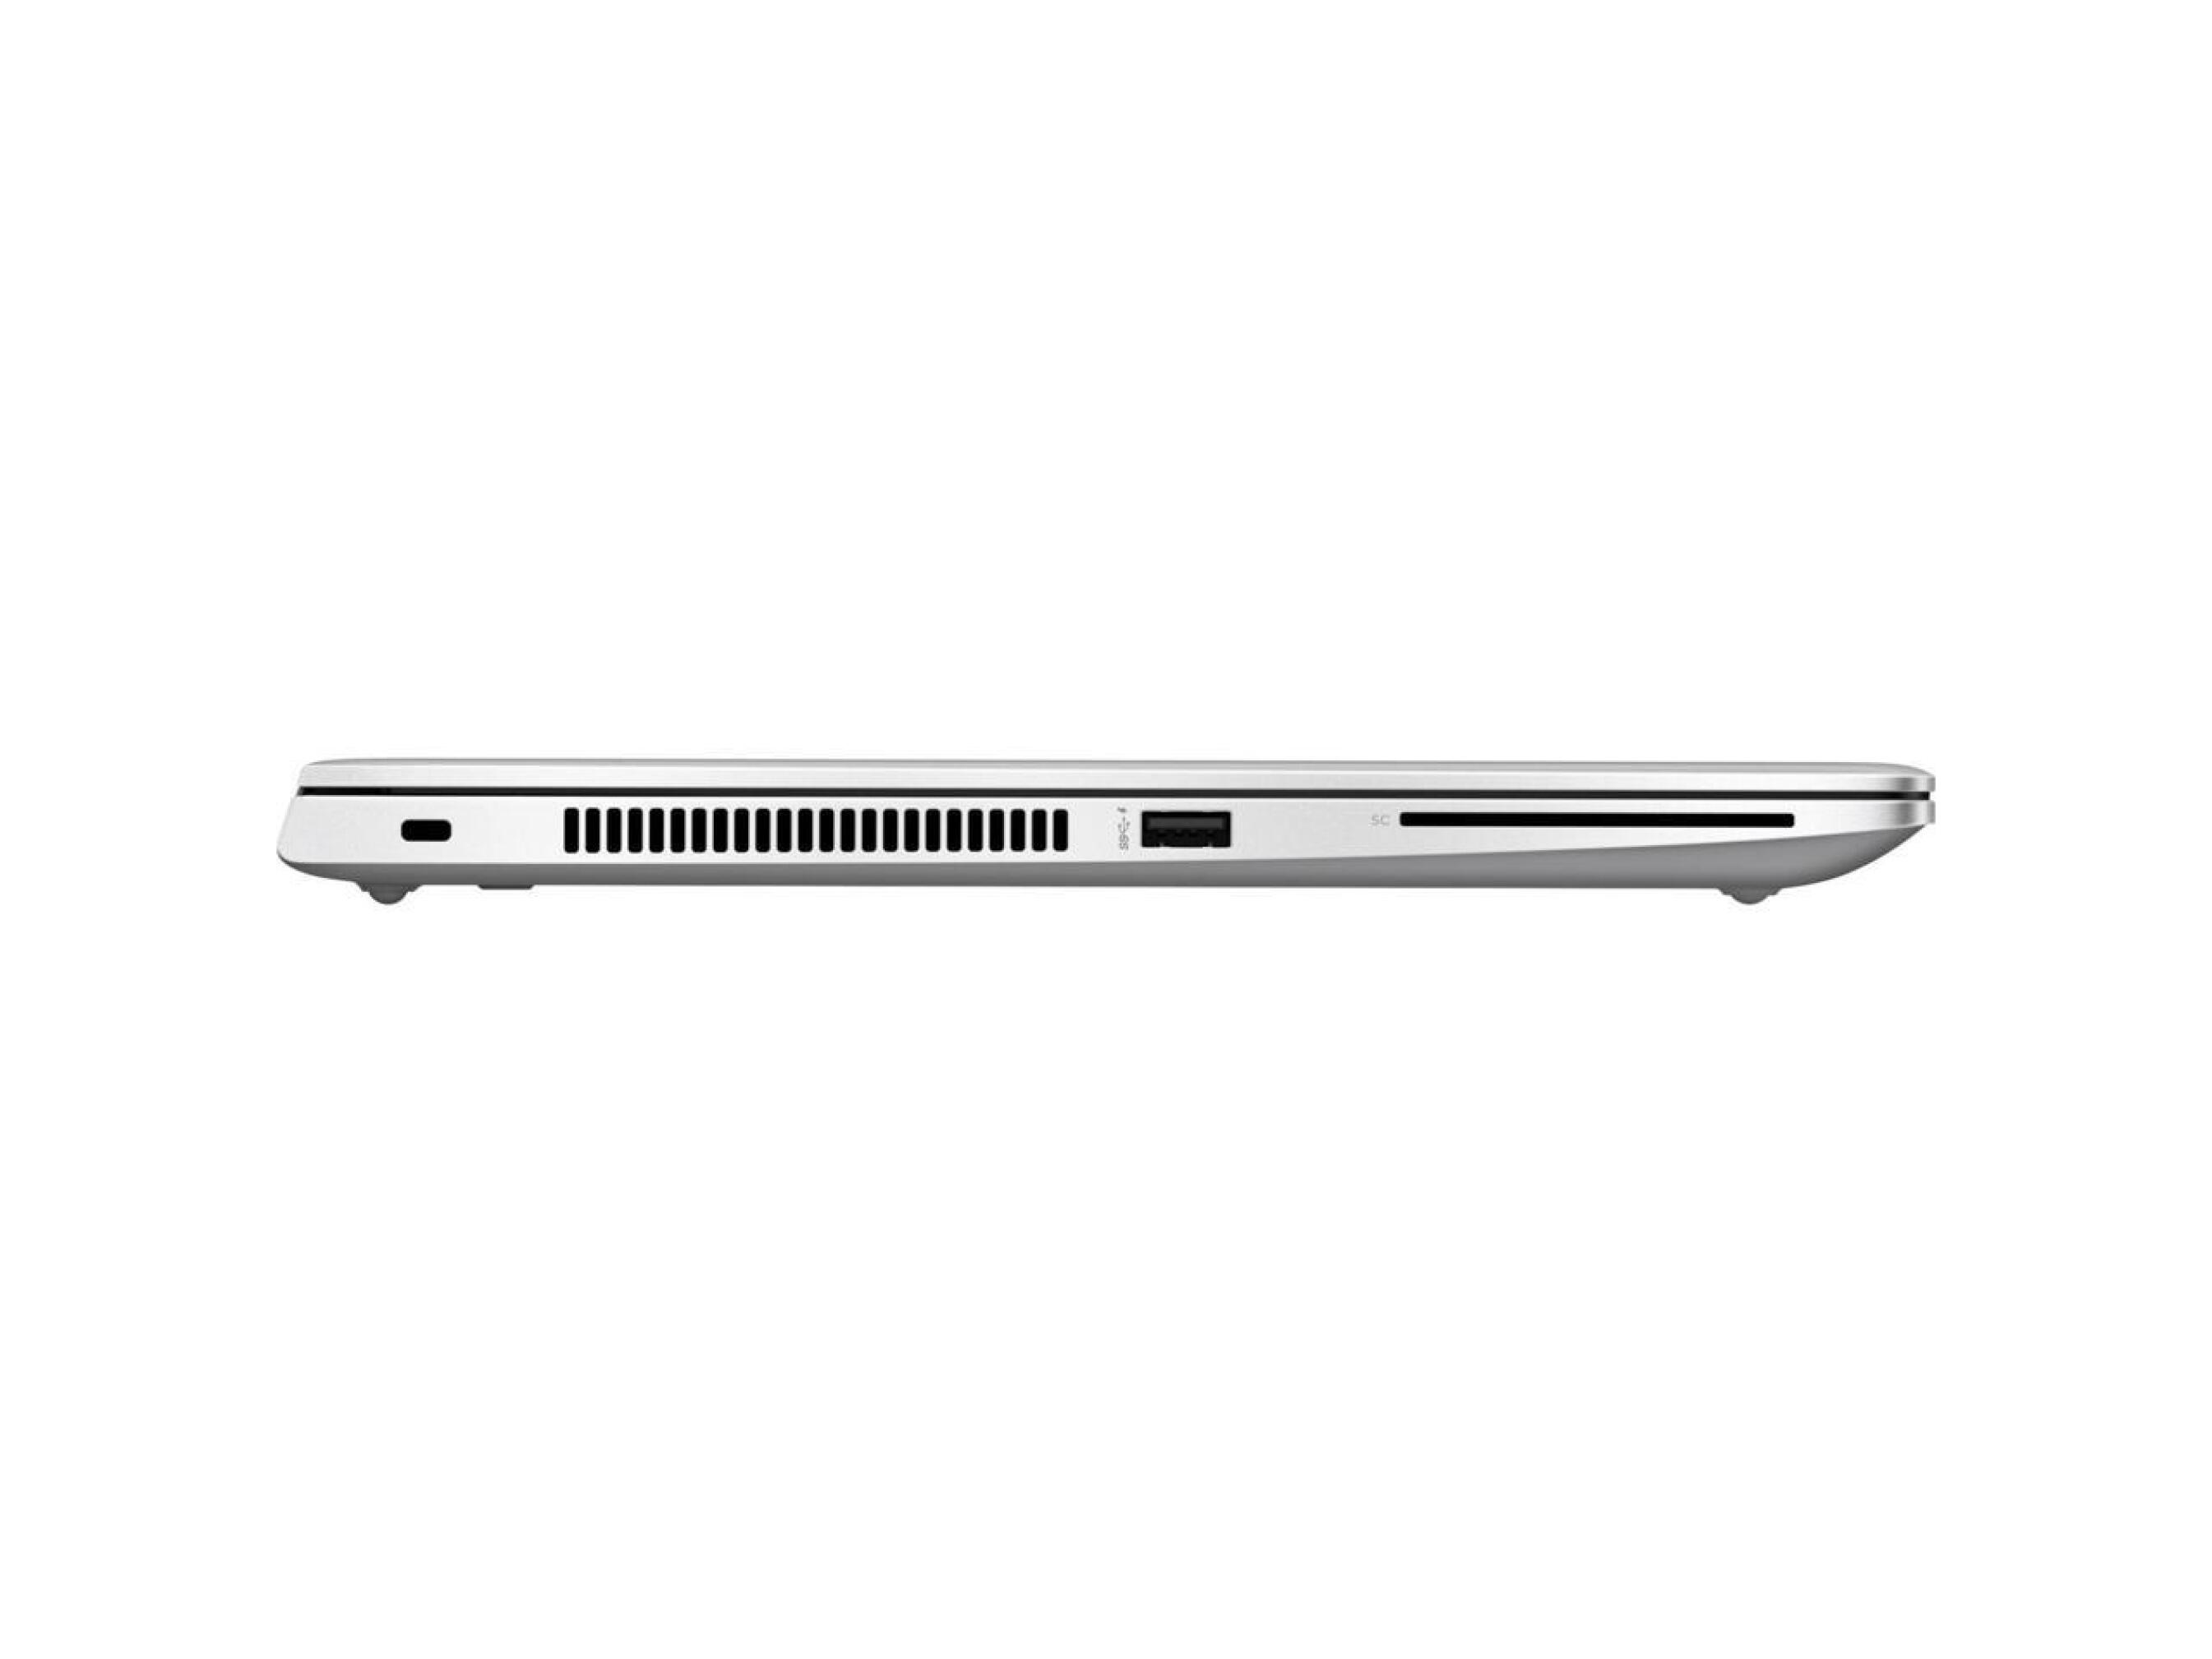  لپ تاپ HP 745 G5 |لاکچری لپ تاپ 